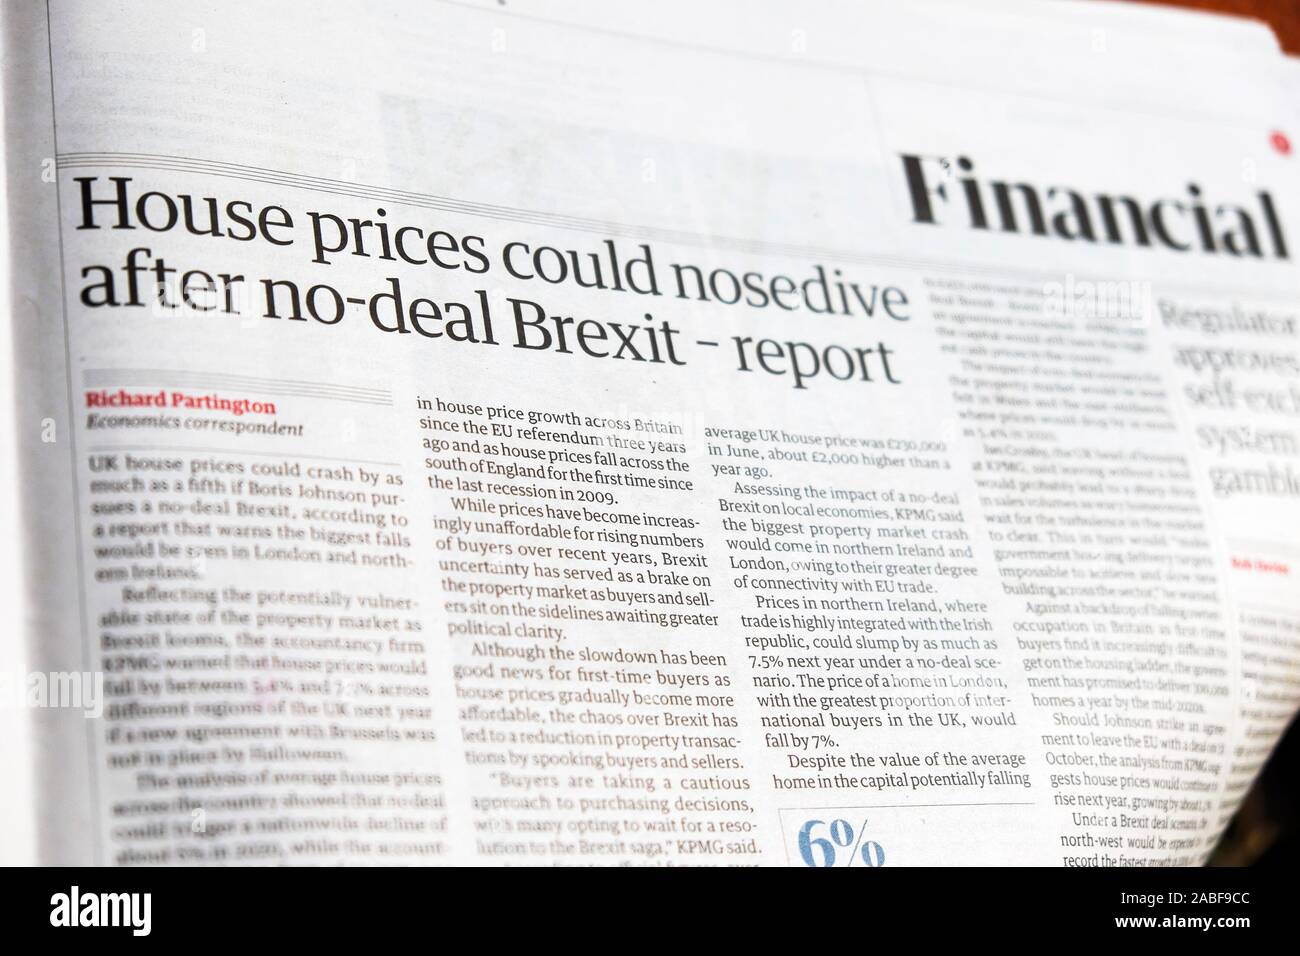 'Prix des maisons pourrait tomber après no-deal Brexit' rapport financier journal The Guardian Londres Angleterre Royaume-uni global page 2 Septembre 2019 Banque D'Images